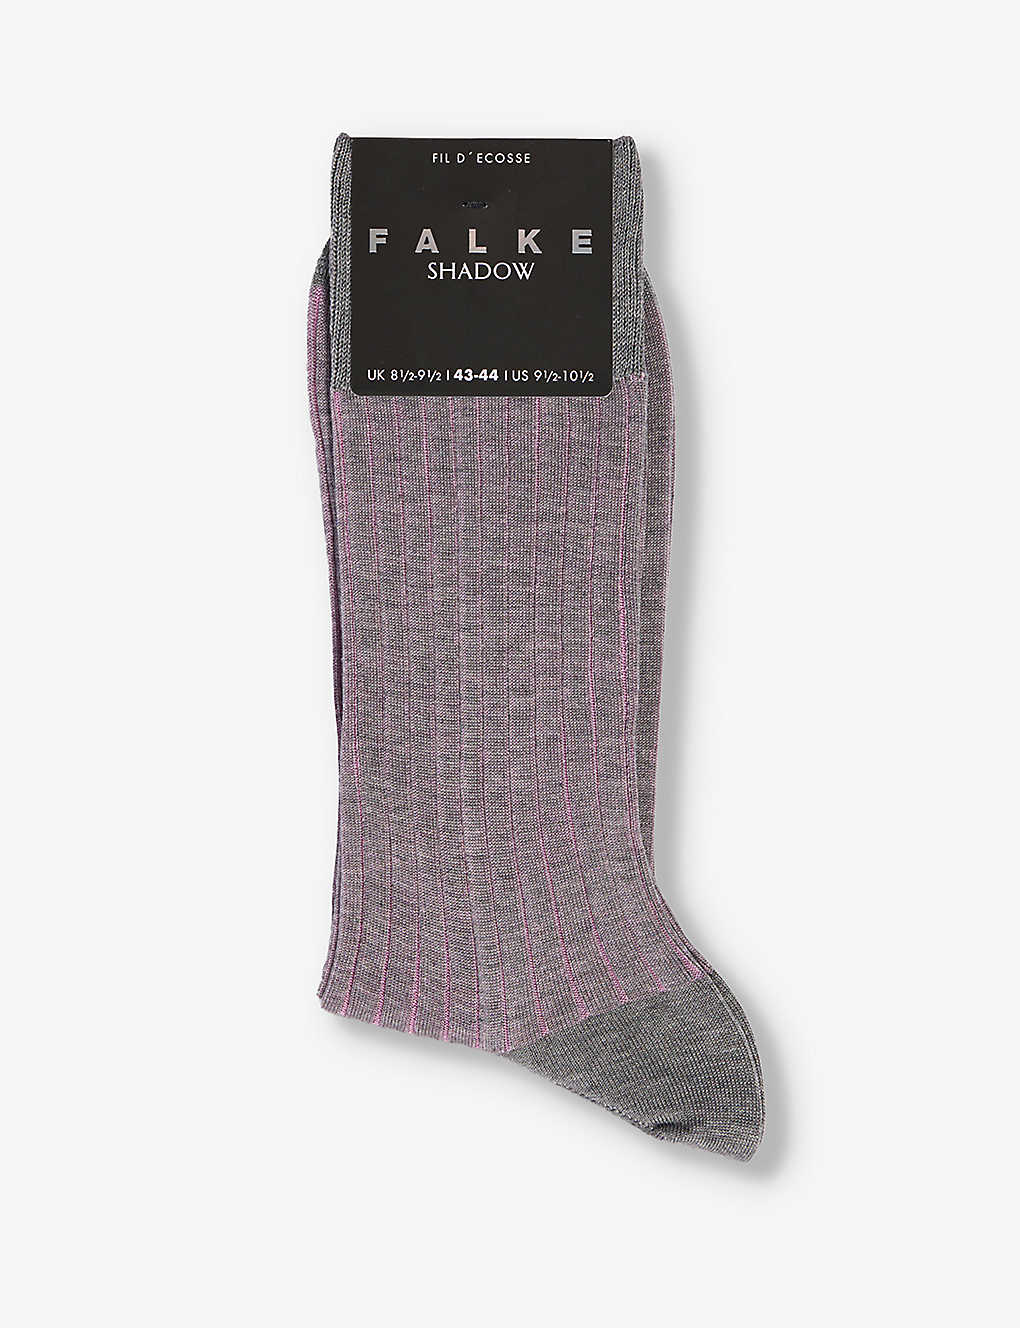 Falke Shadow Mercerized Cotton & Nylon Dress Socks In Grey